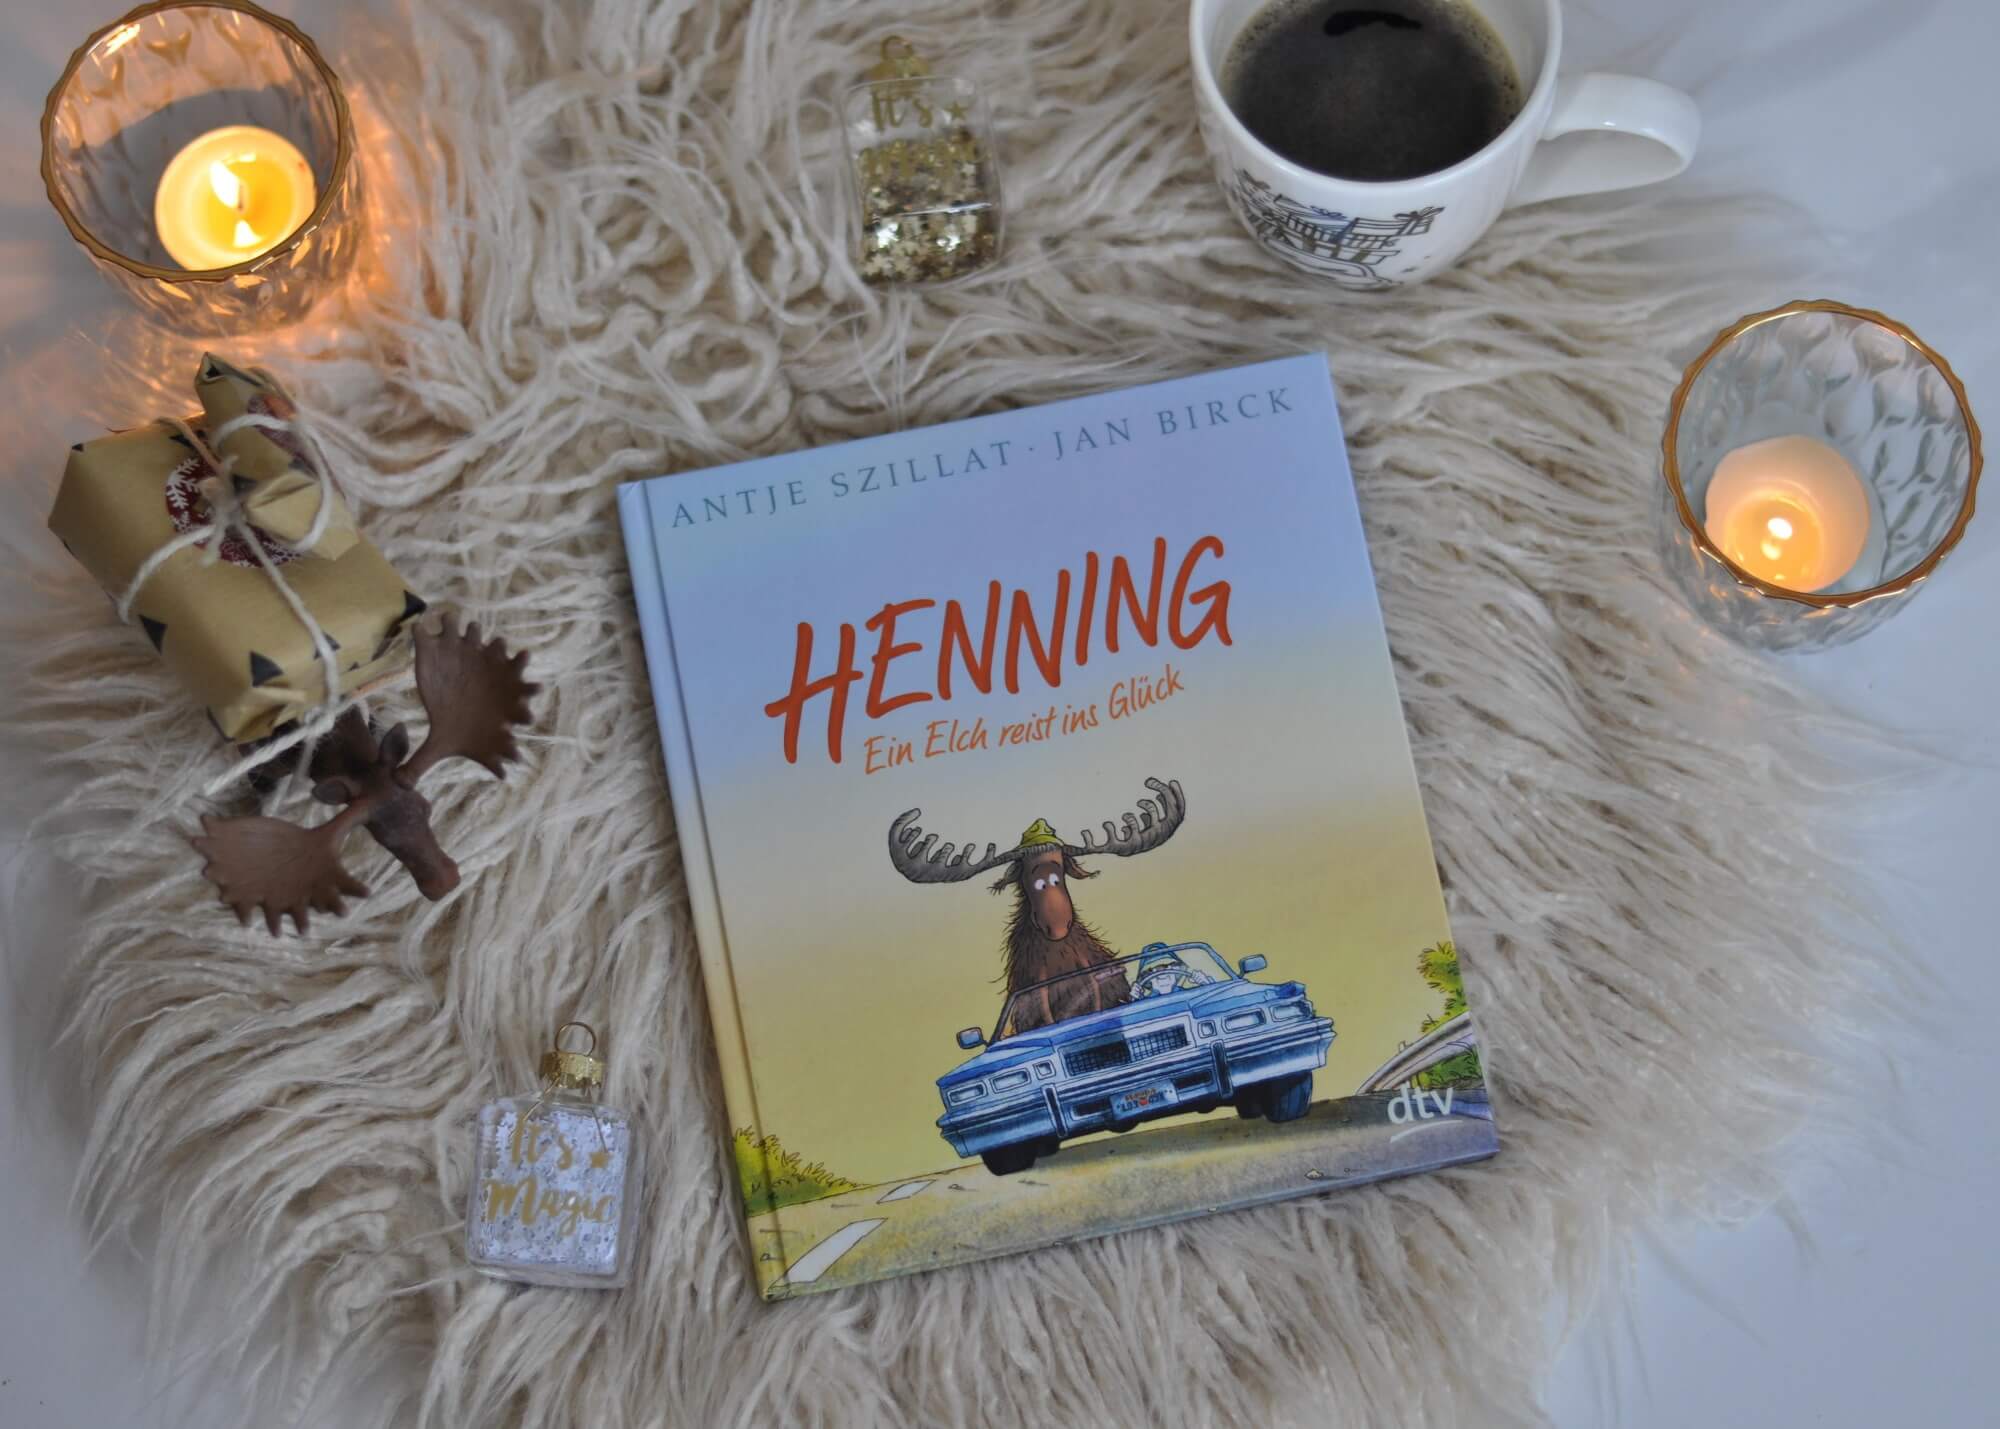 Mitten in den Dreharbeiten türmt Henning vom Set. Doch der Weg ist weit, so dass Henning jede Mitfahrgelegenheit wahrnimmt. Dafür schenkt er allen ein offenes Ohr, obwohl ihm niemand so recht zuhören mag. Denn so ein zuhörender Elch kann ein Leben verändern. #elch #schweden #glück #liebe #roadtrip #theraphie #lesen #buch